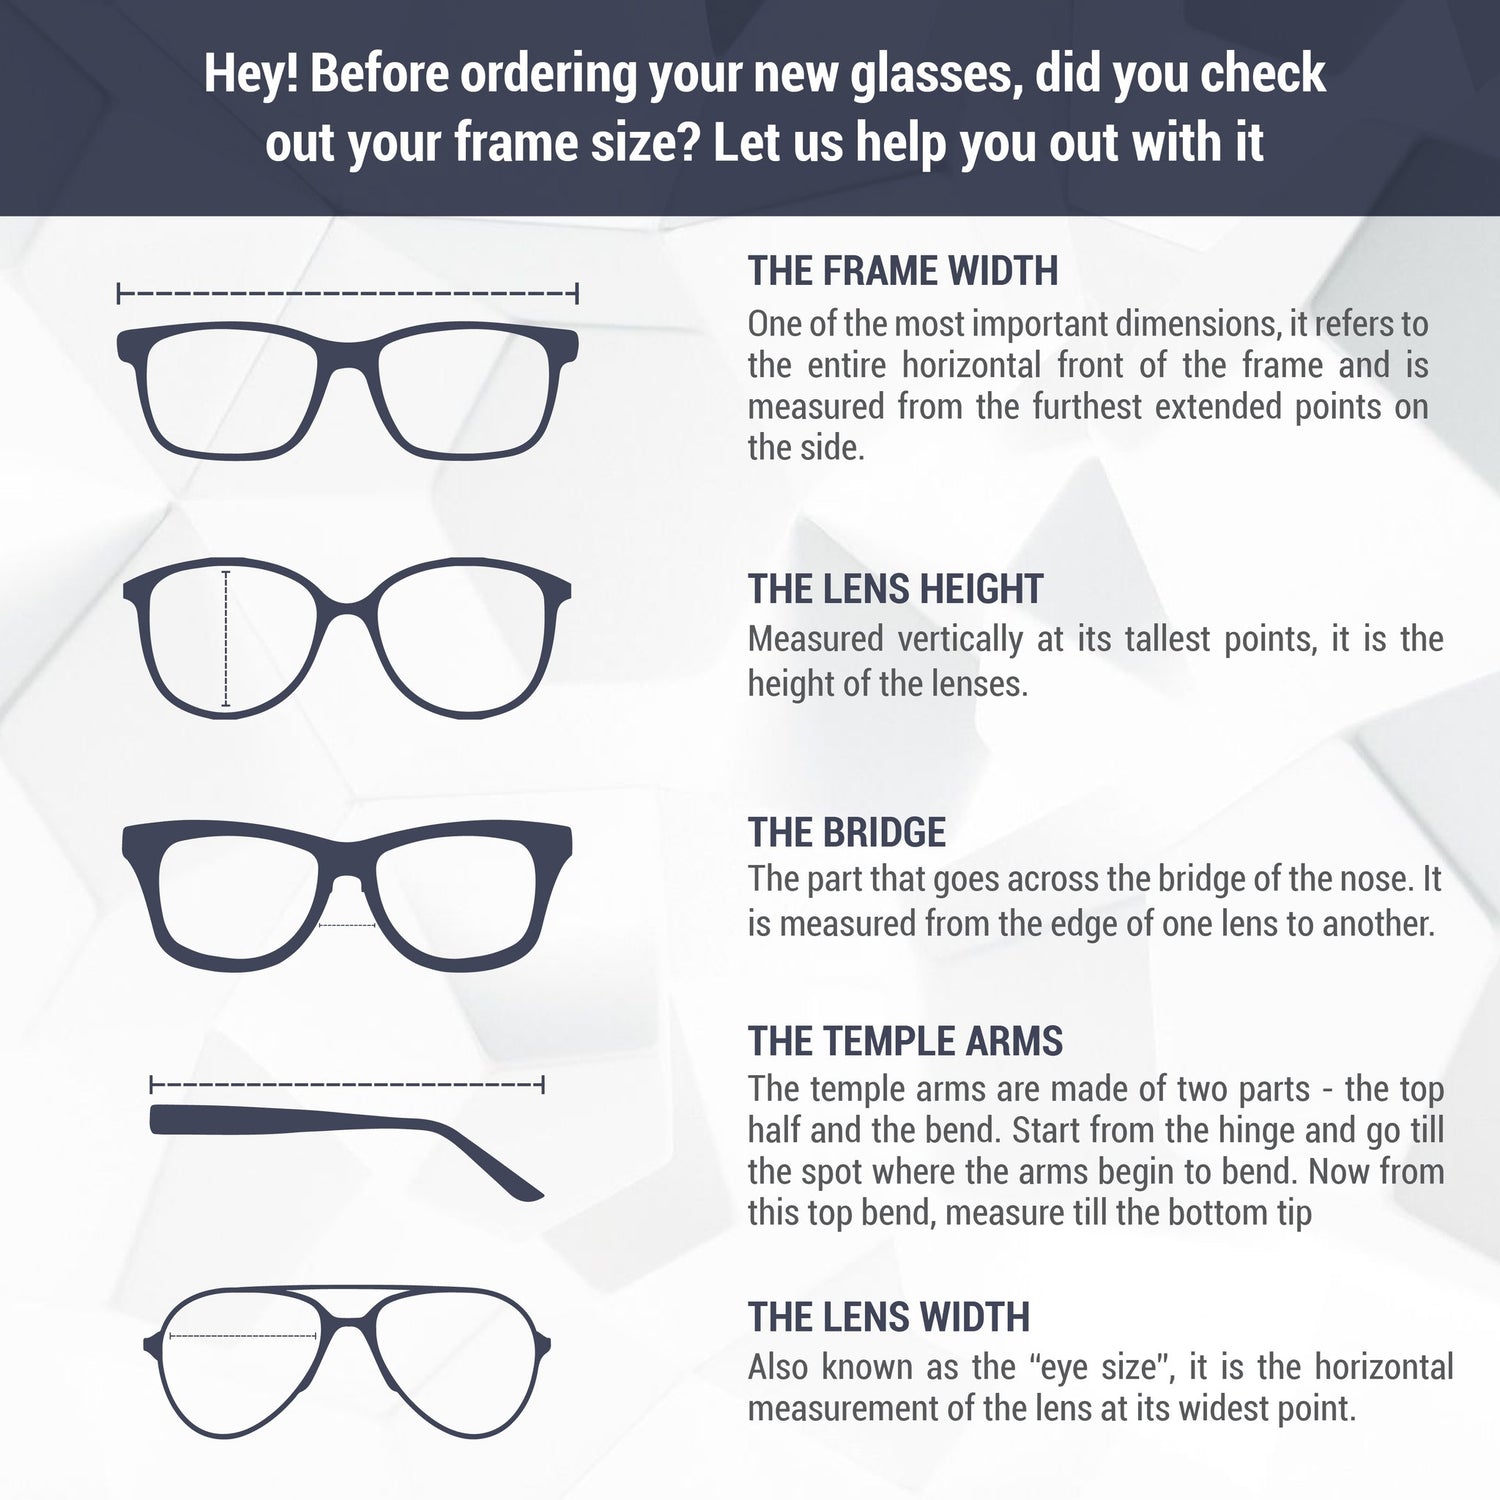 Montatura per occhiali Sover | Modello S0119